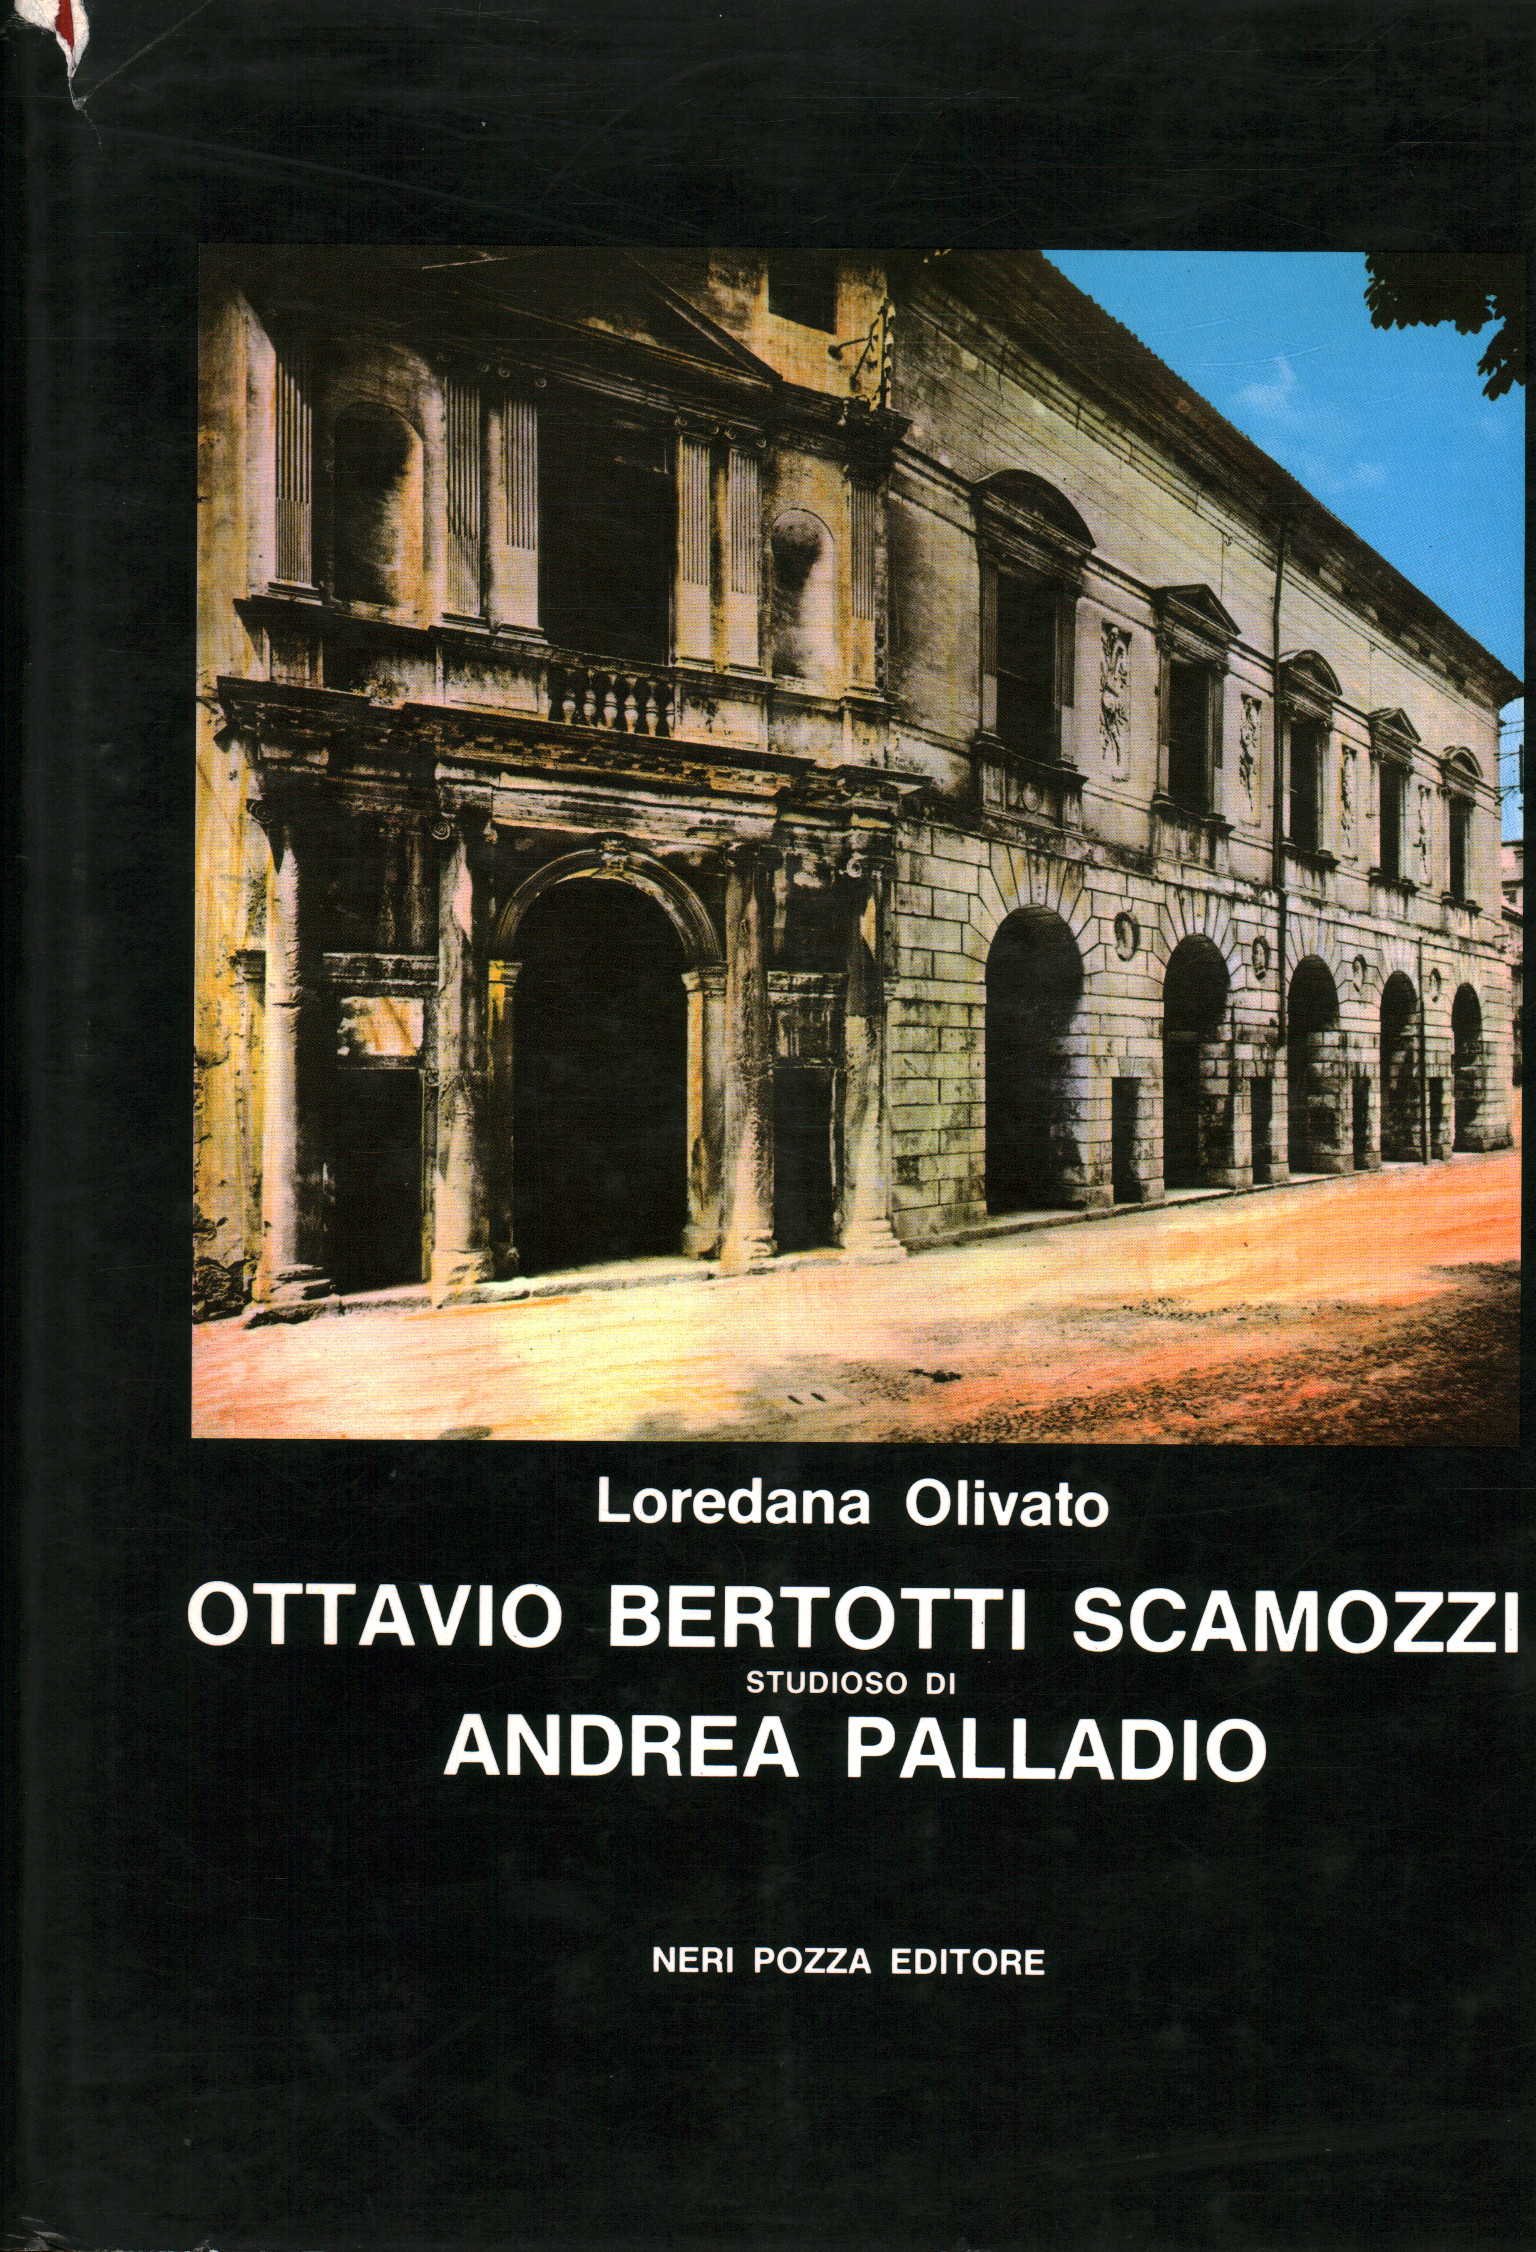 Books - History - Locale, s.a., Ottavio Bertotti Scamozzi scholar of An